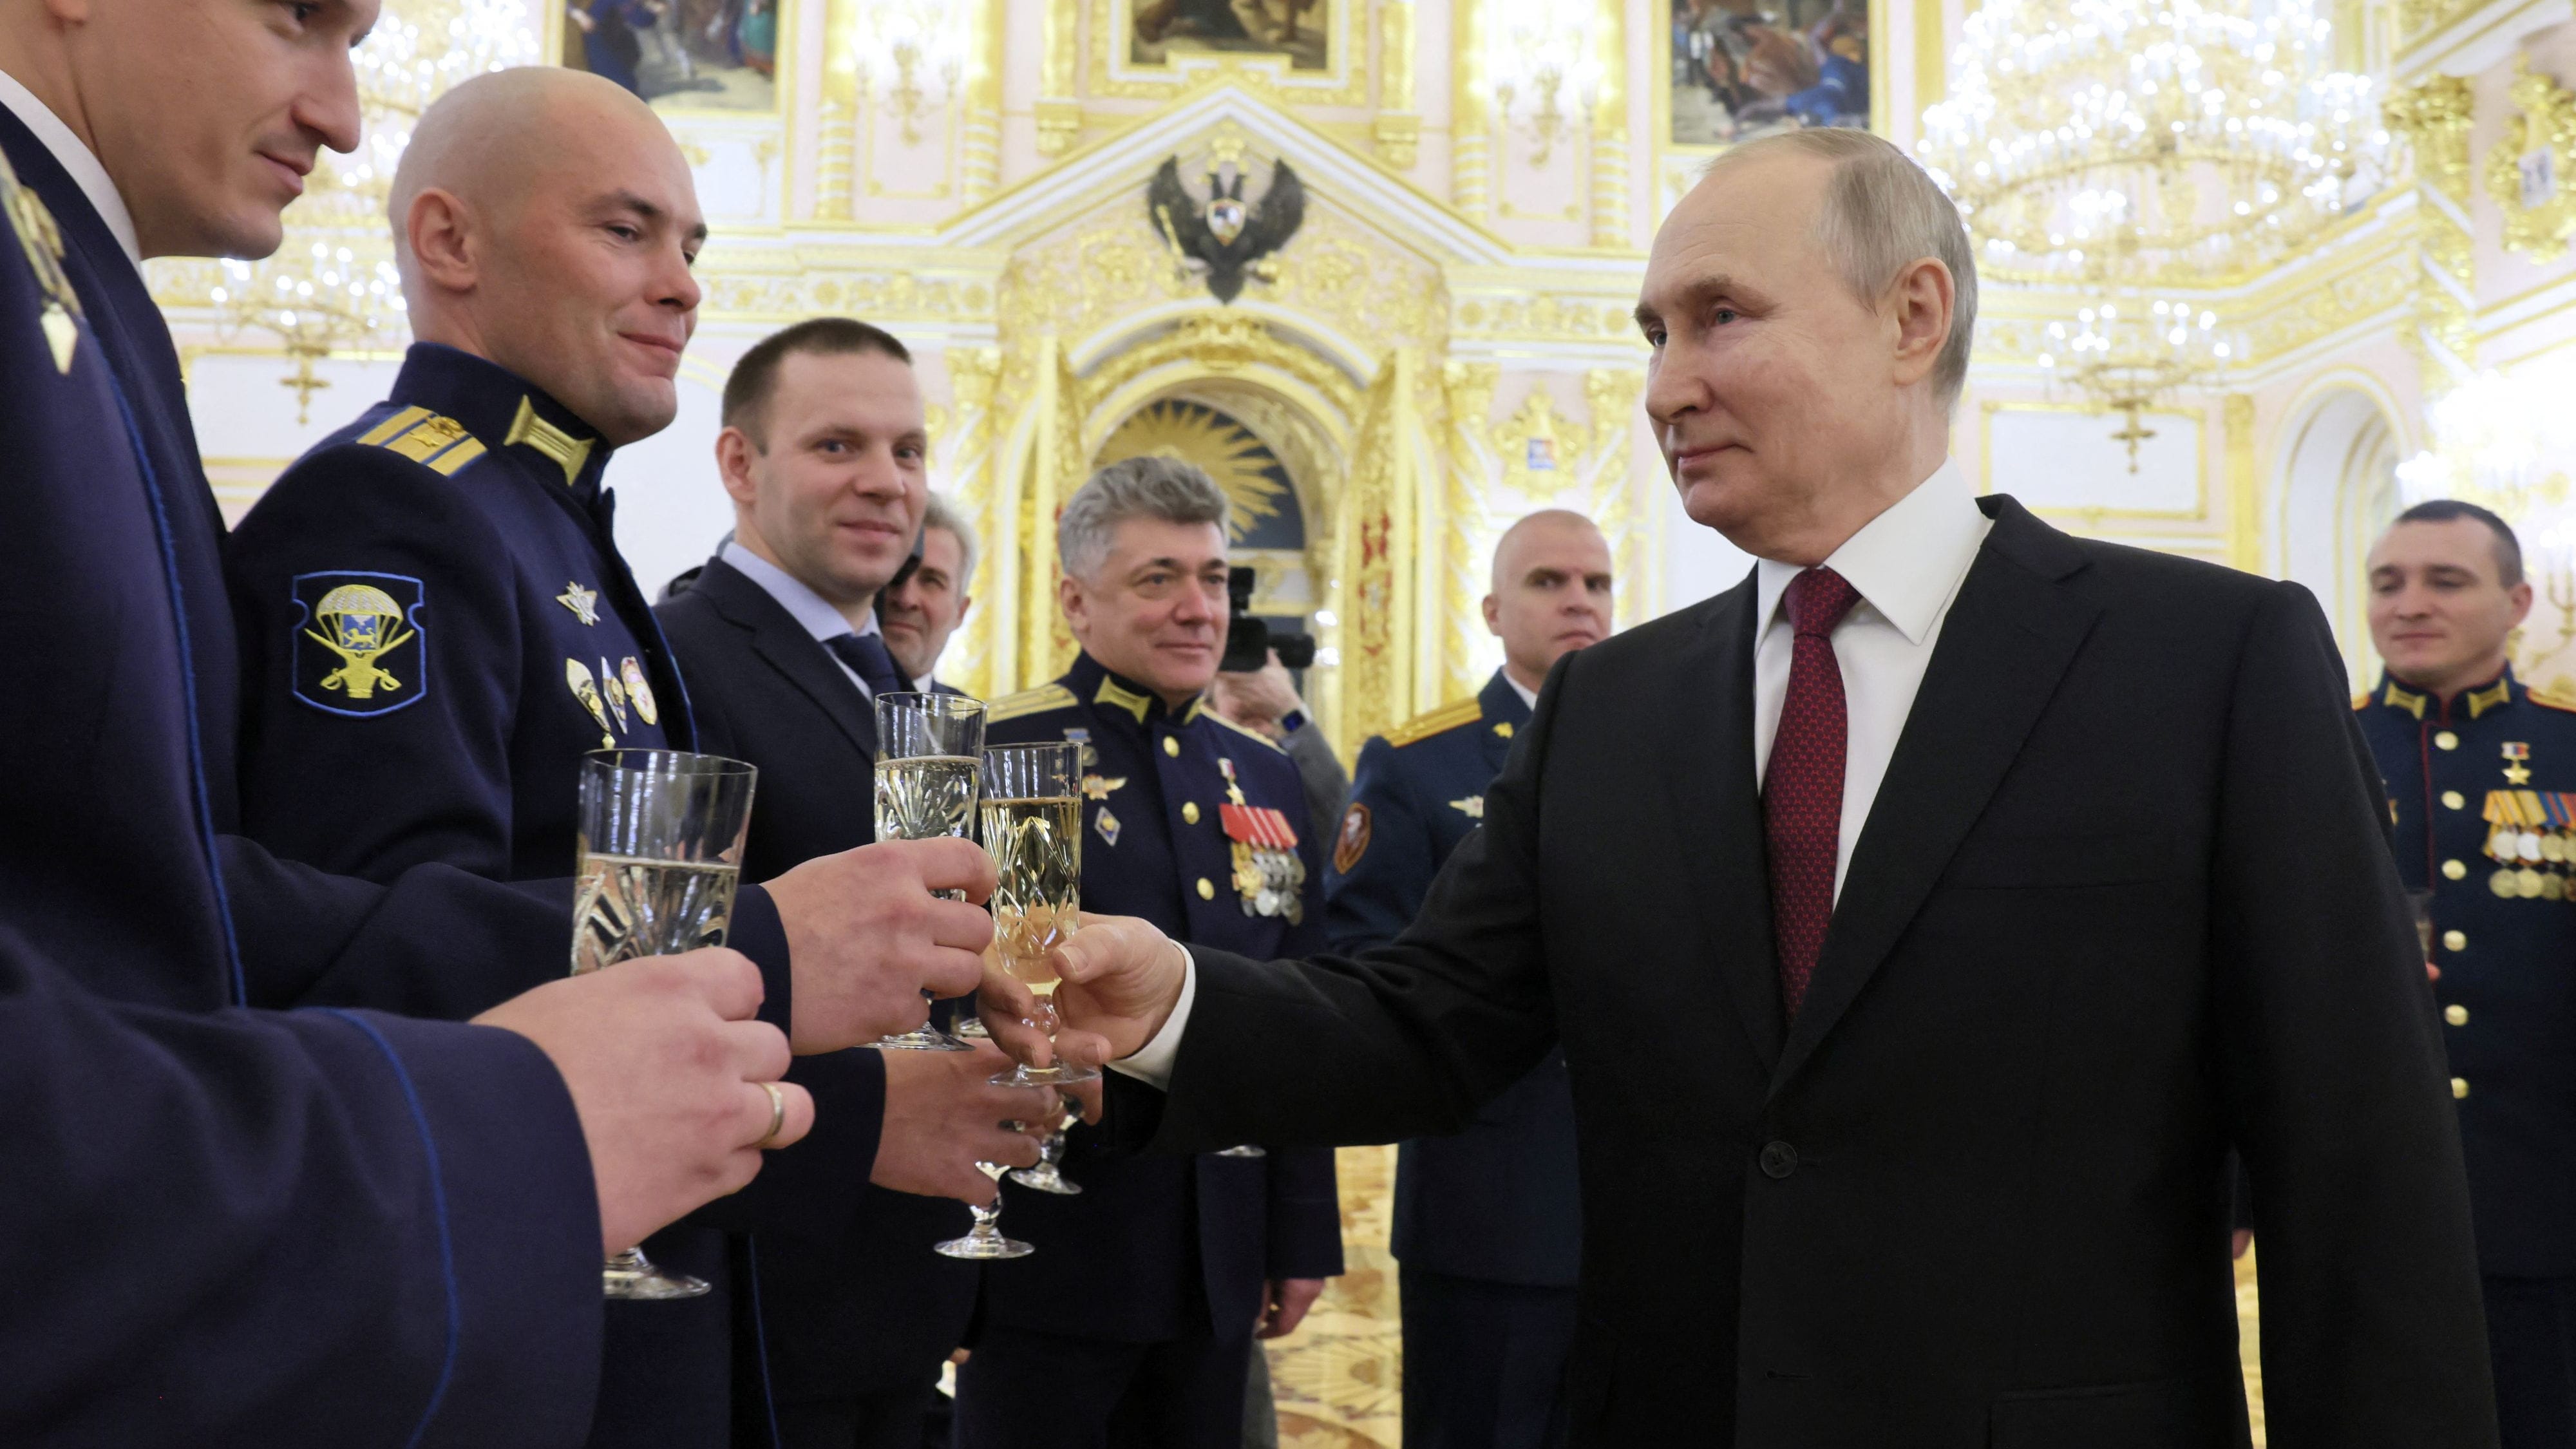 Putin betrunken? Das sagt ein Experte zu seiner bizarren Rede